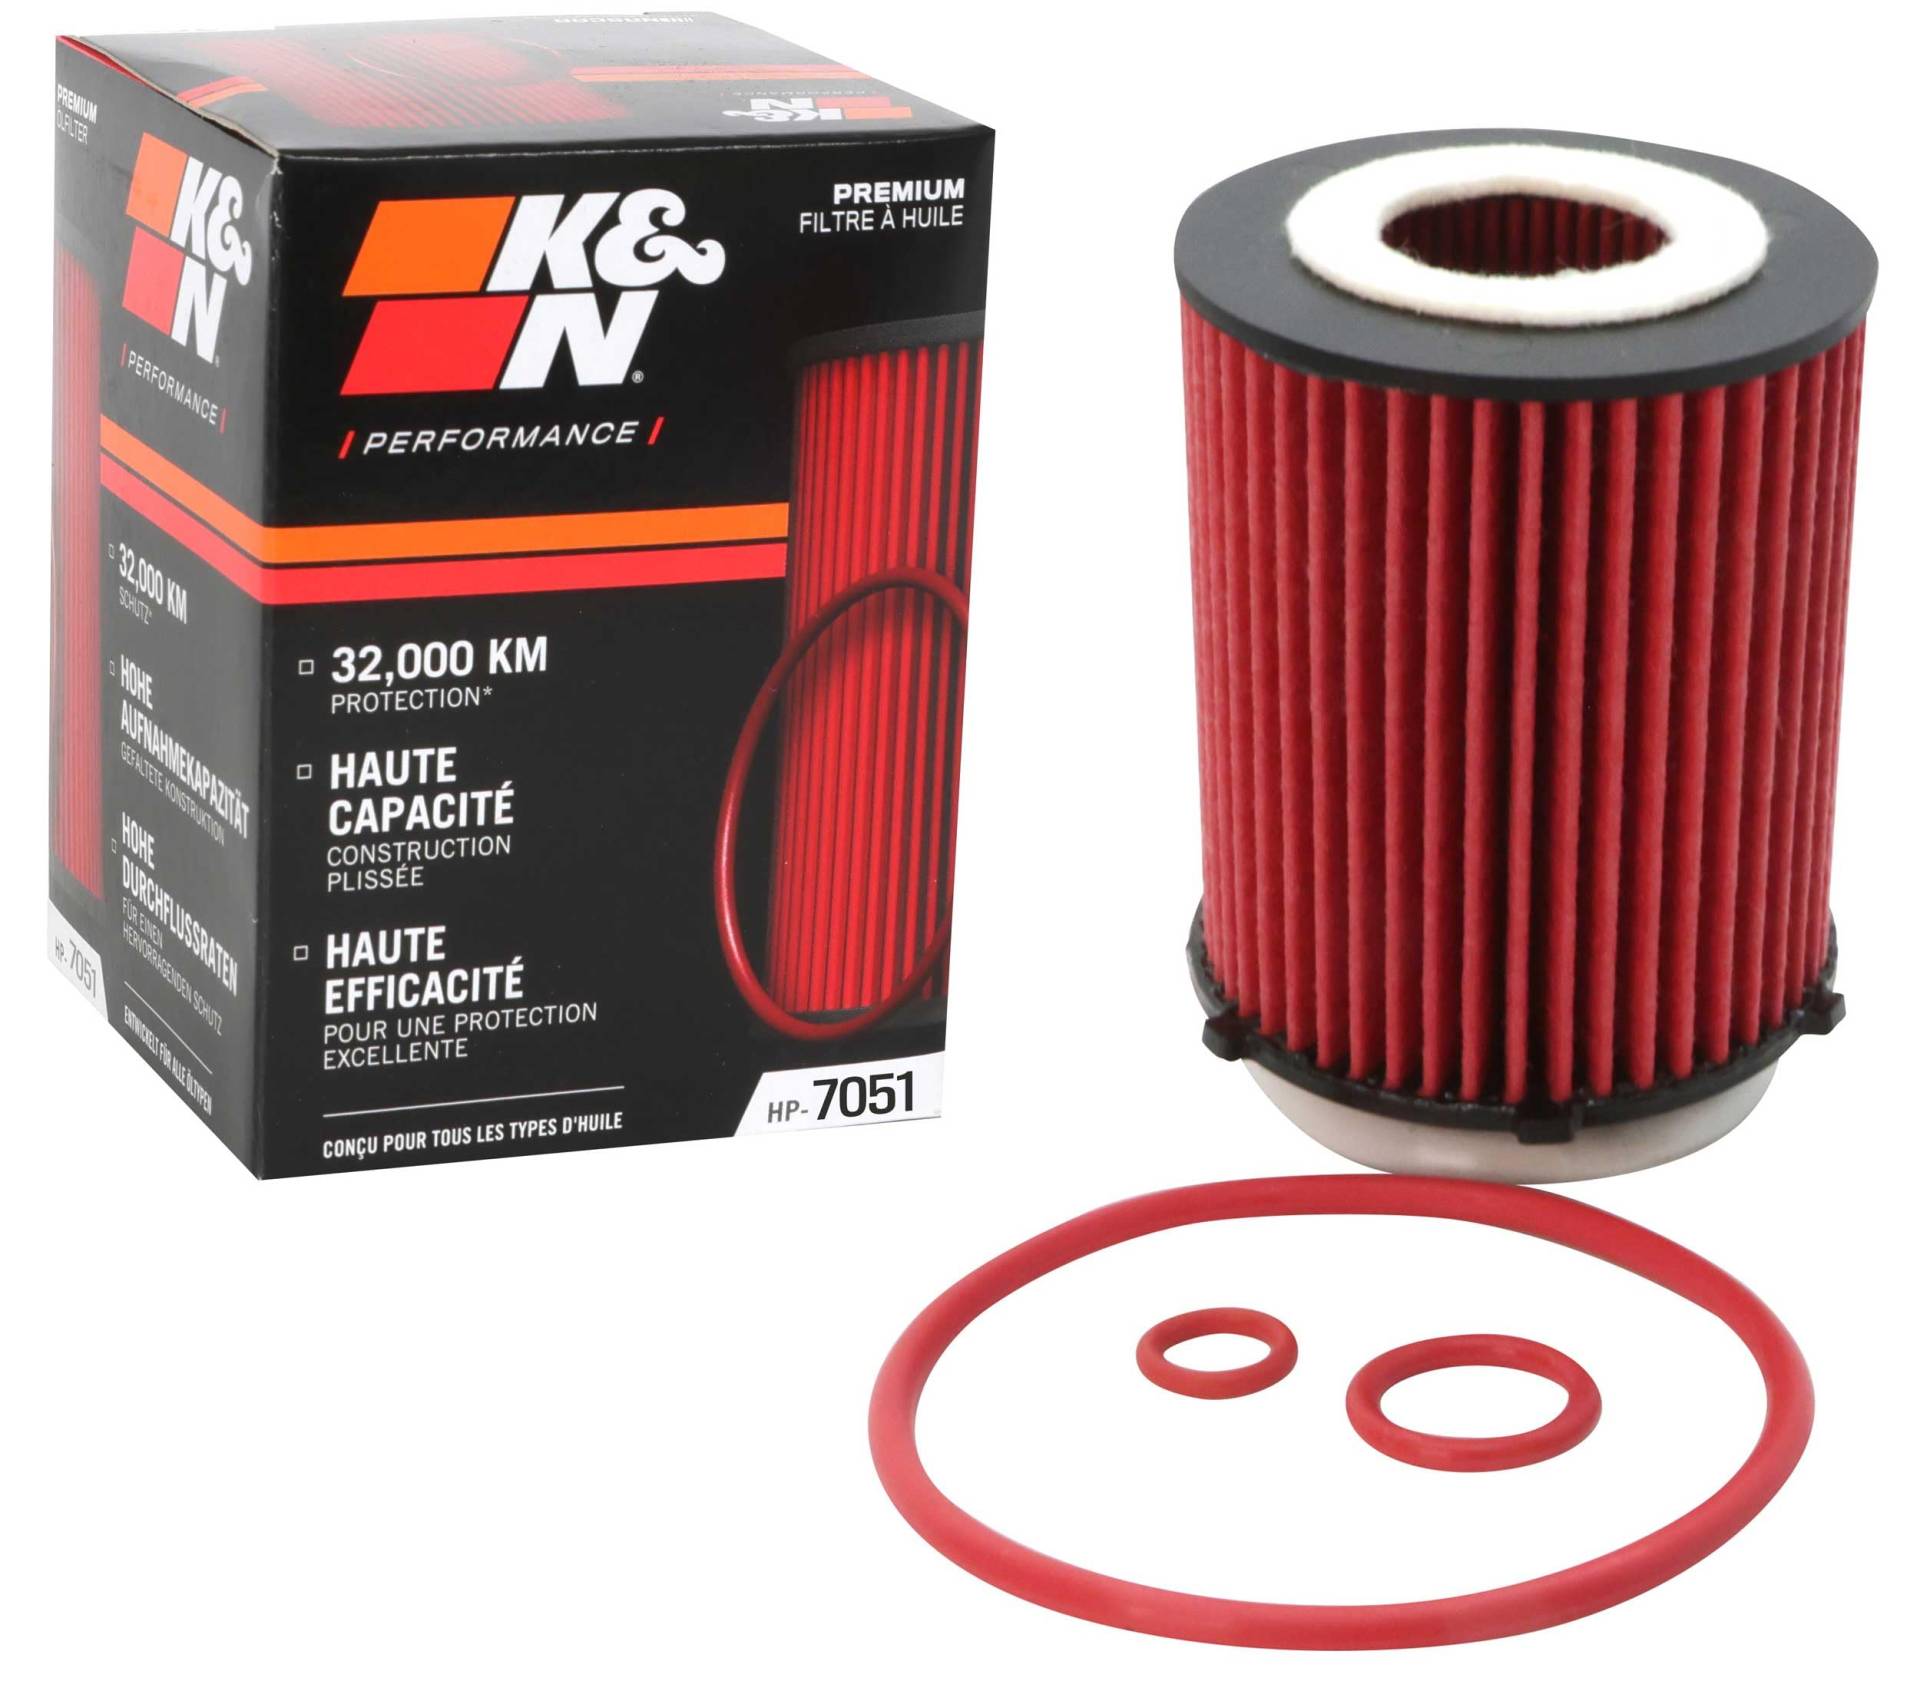 K&N Ölfilter - High Performance-Series kompatibel mit Mercedes (HP-7051) von K&N